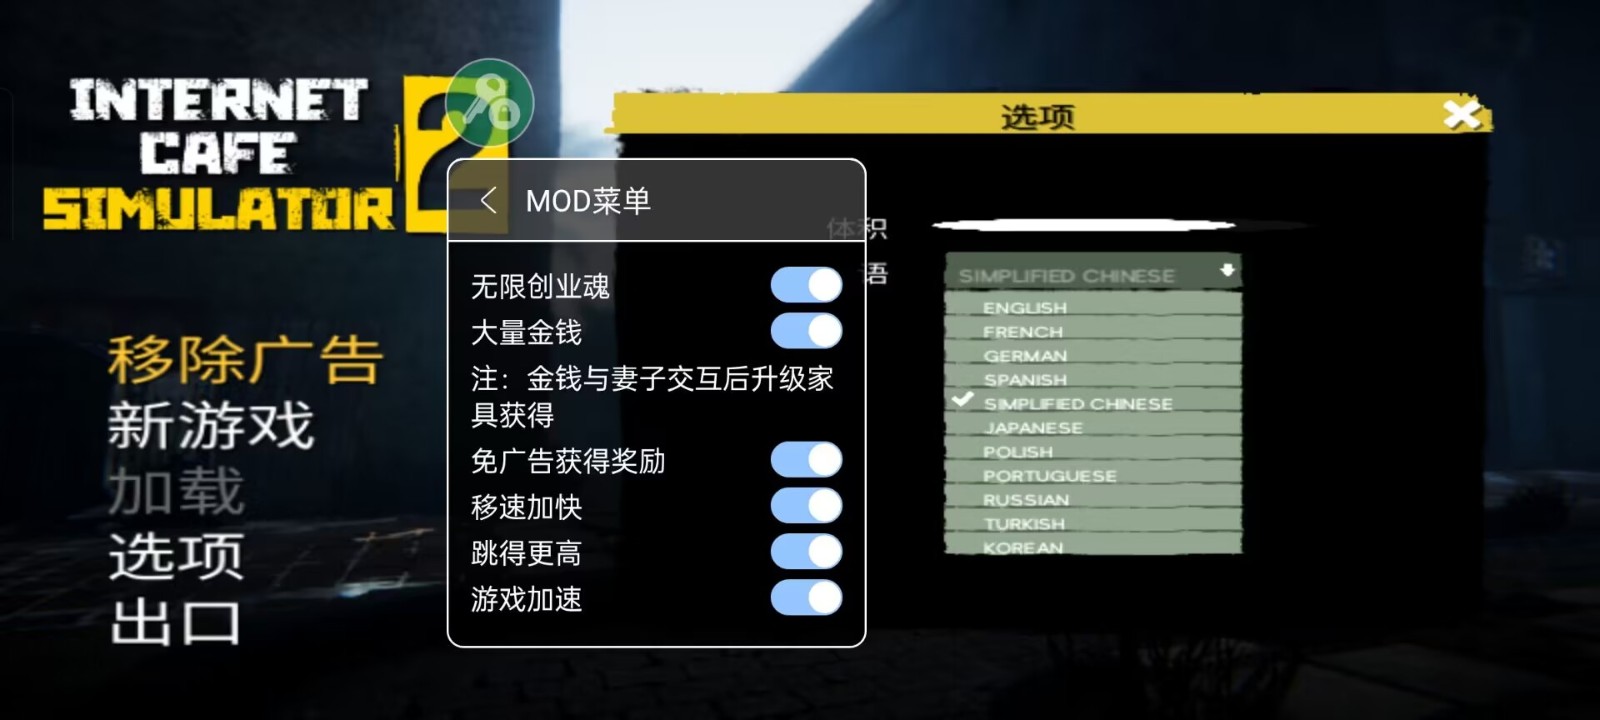 网吧老板模拟器2中文版截图3